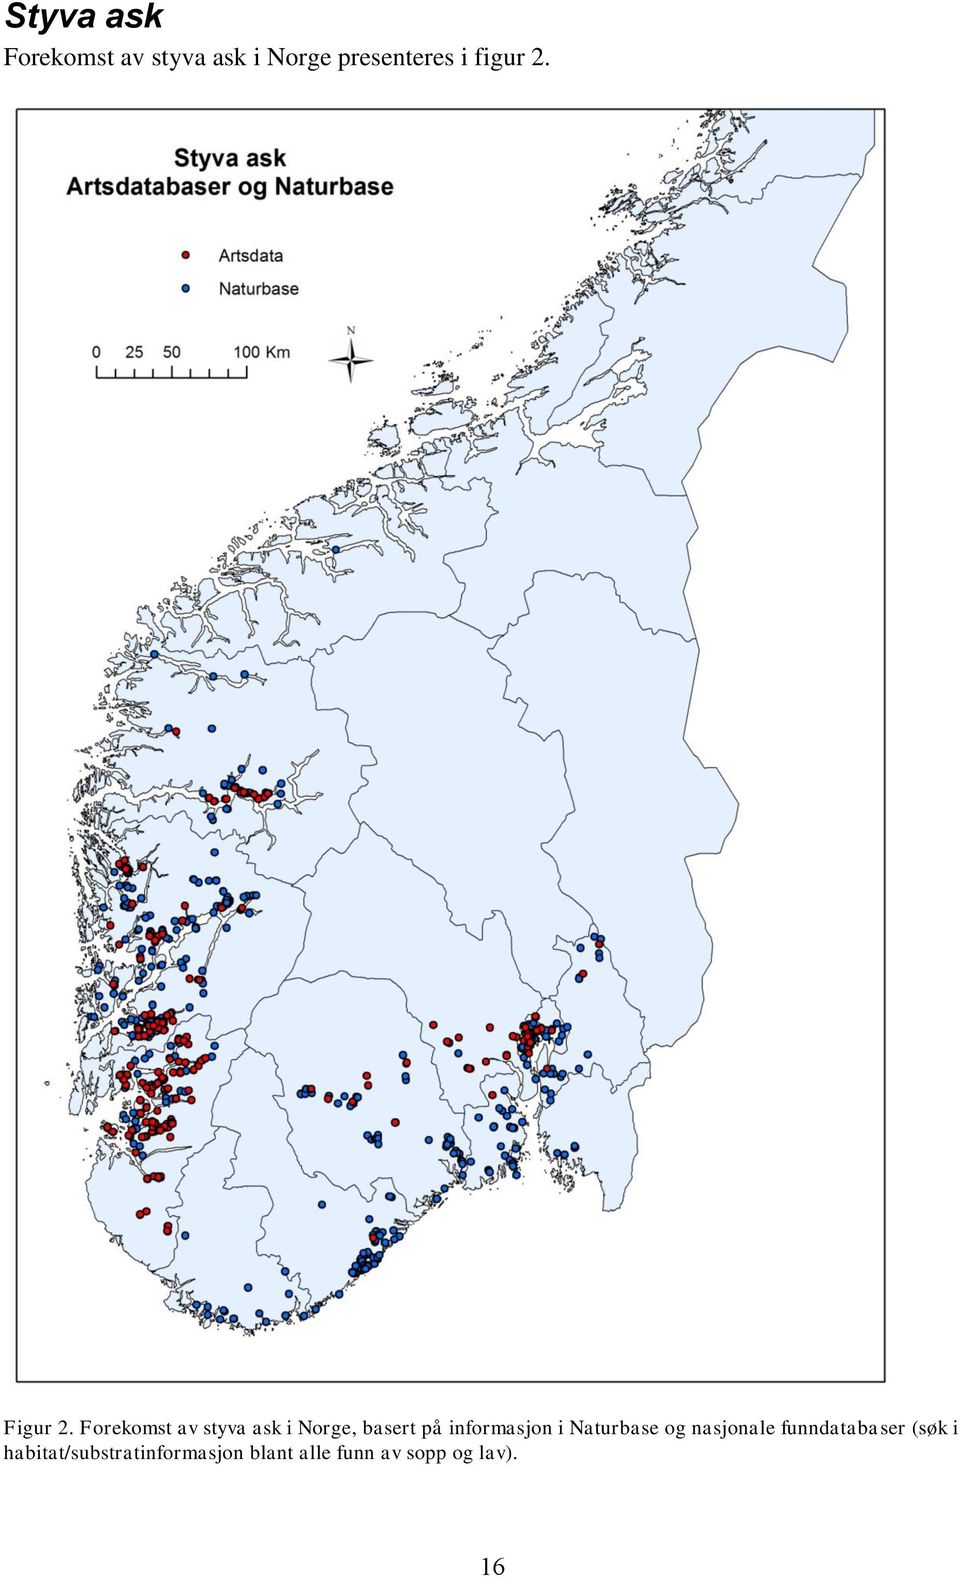 Forekomst av styva ask i Norge, basert på informasjon i